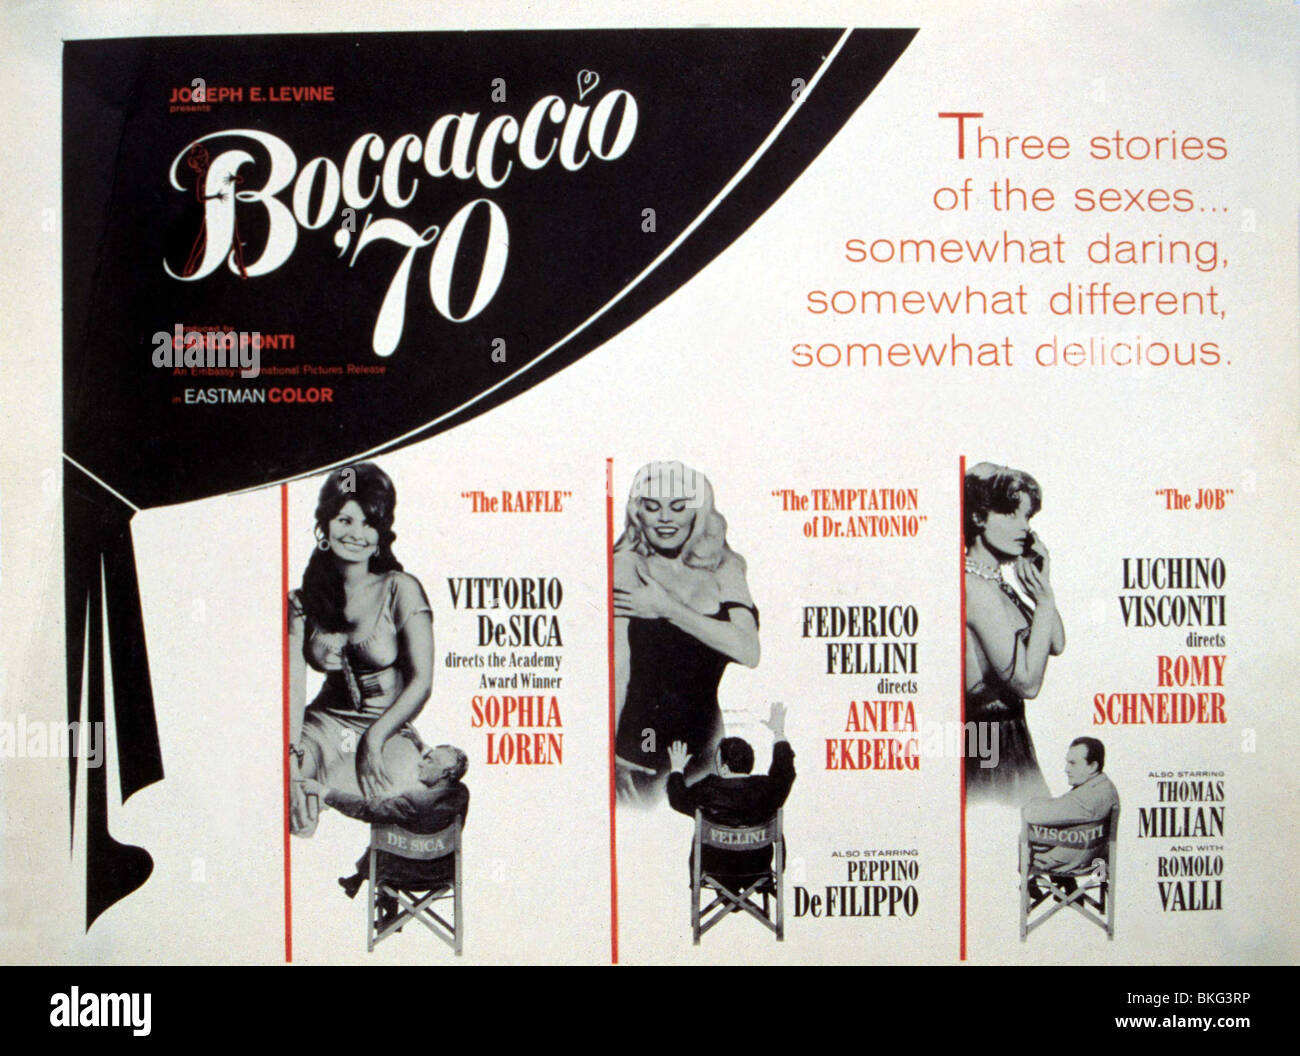 BOCCACCIO 70-1962 POSTER Stockfoto